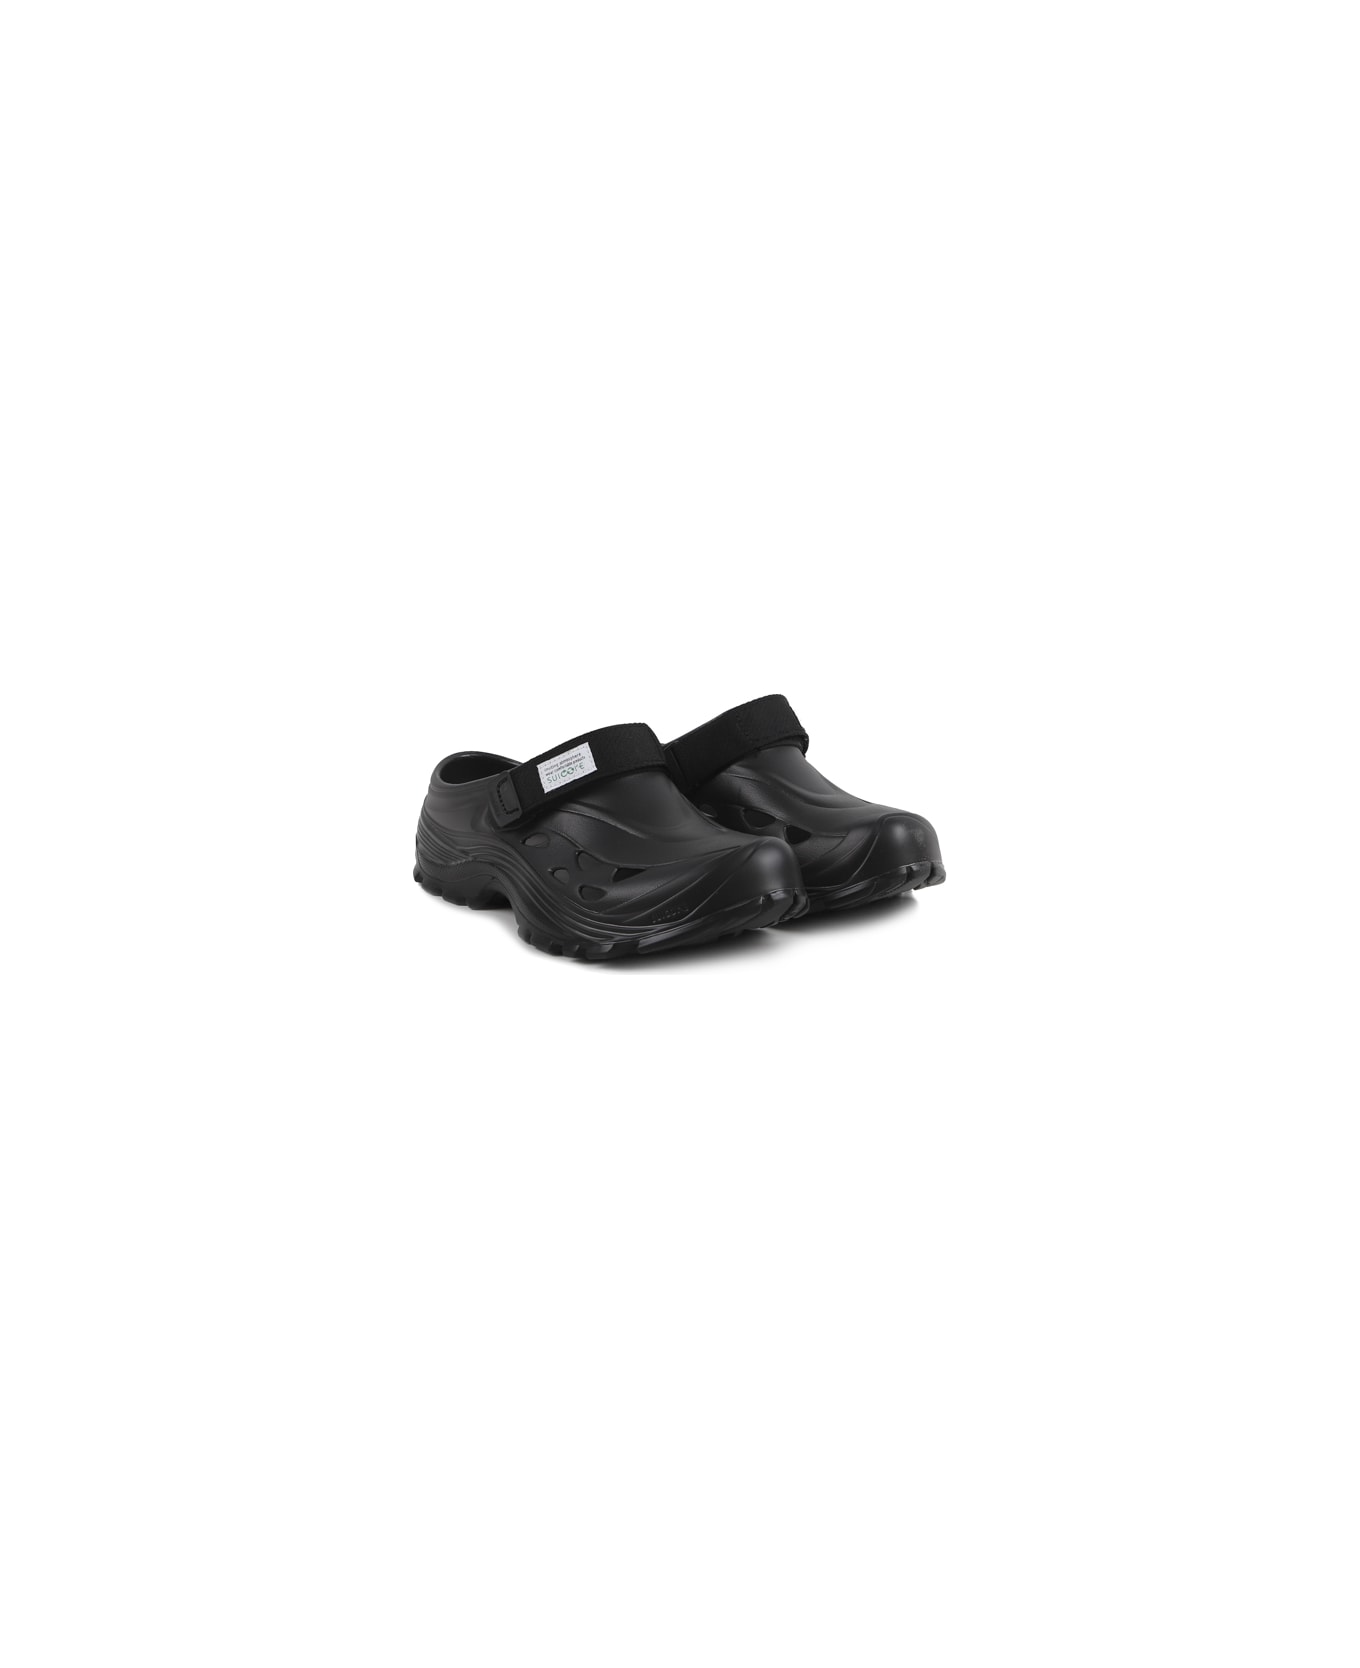 SUICOKE Rubber Sandals - Blk black